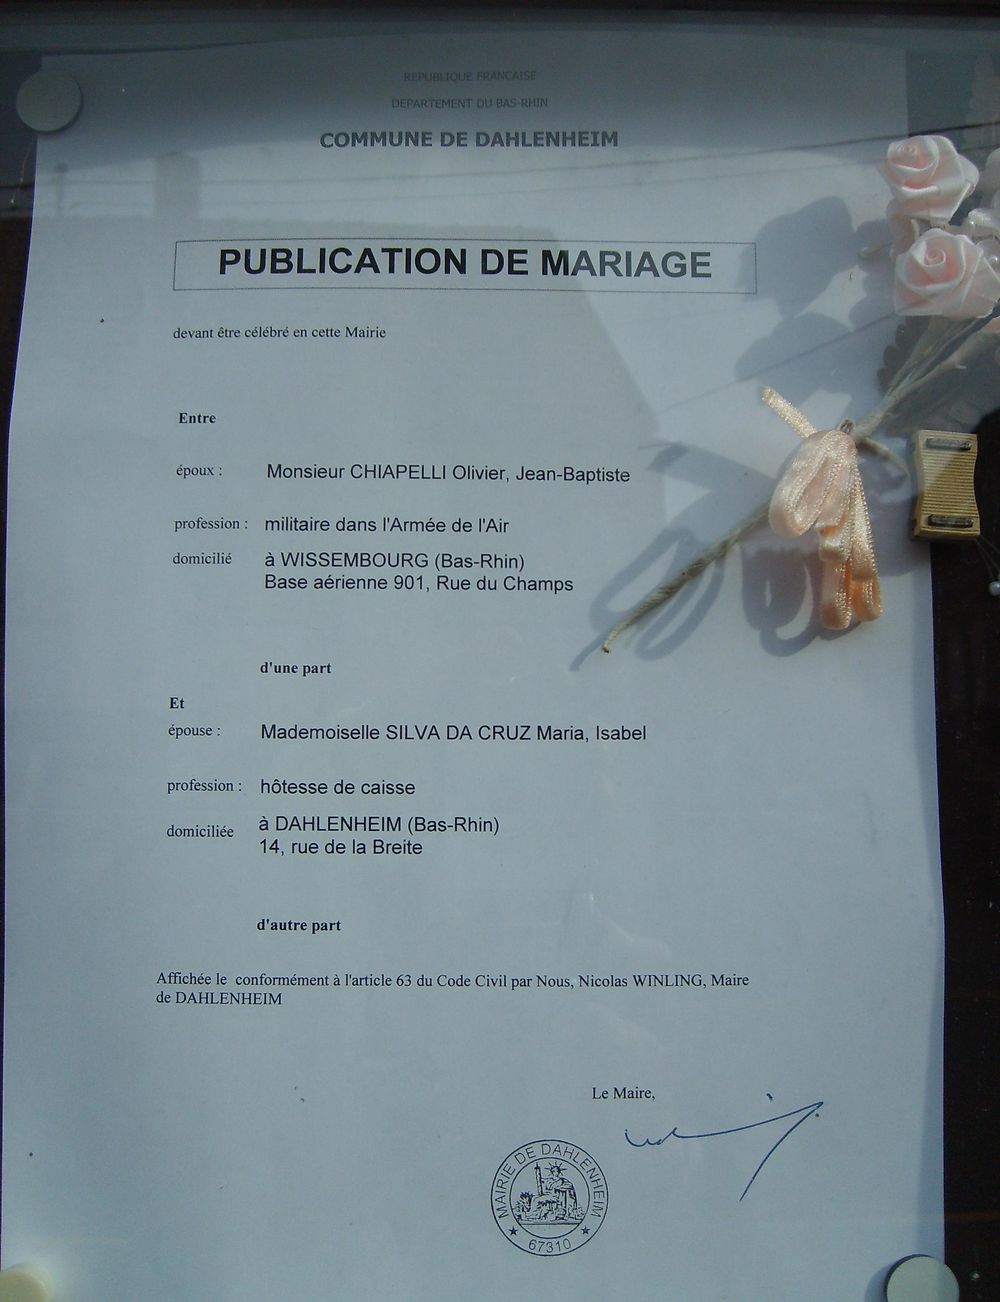 Re: Certificat de capacité à mariage (ccam) - formalités pour se marier en Algerie - Zohir-Bouher